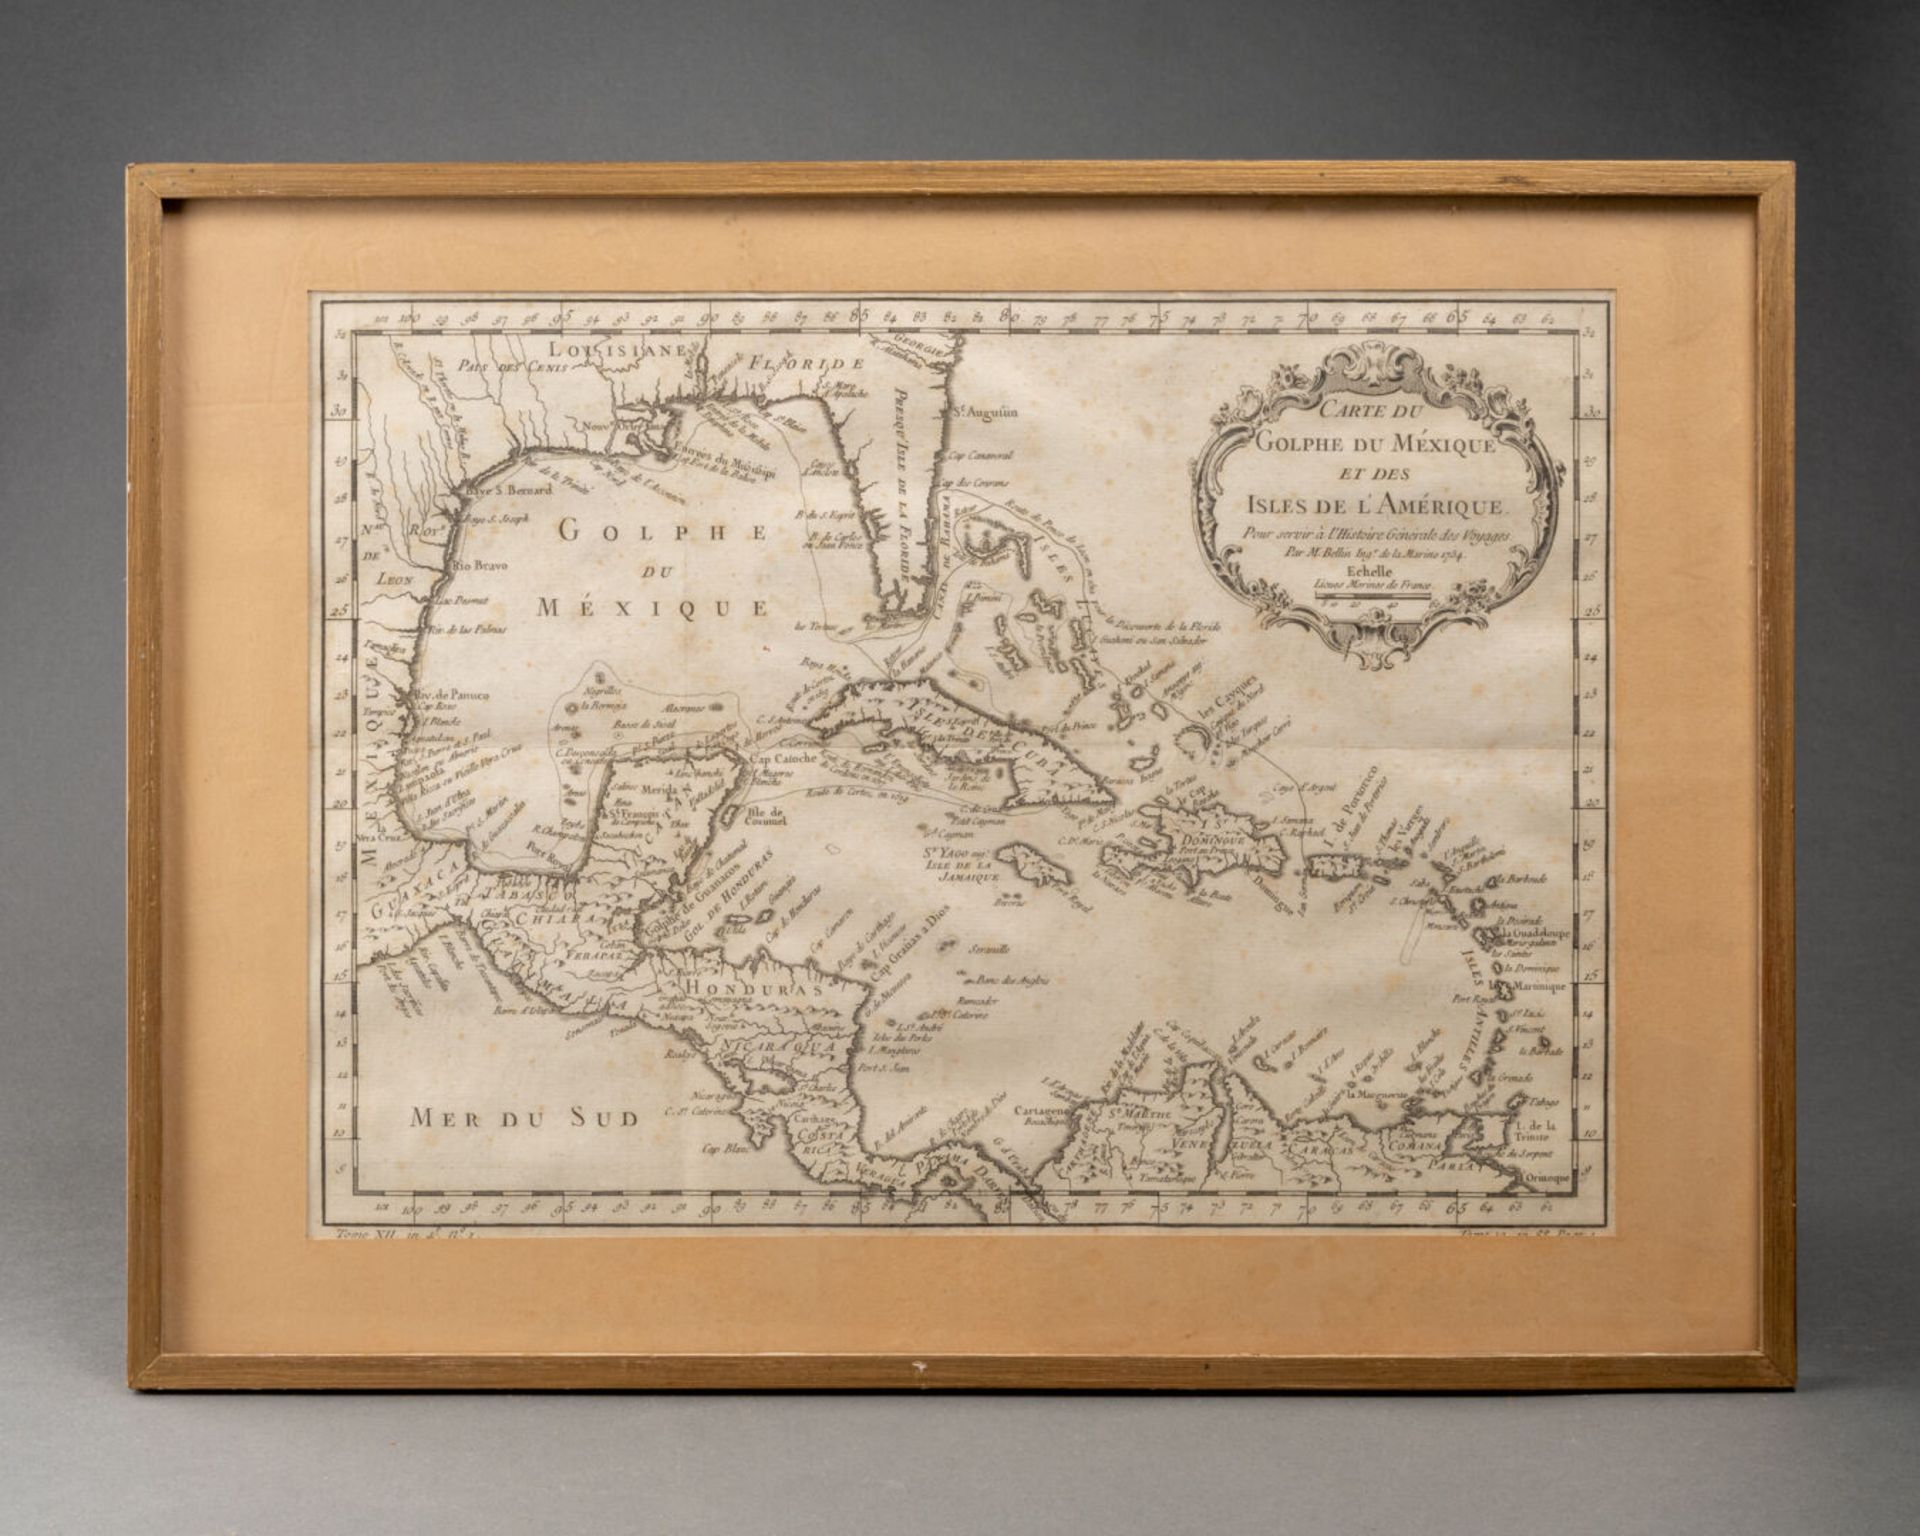 Carte du Golf du Mexique et des îles de l'Amérique Gravure du XIXe siècle H. 28 cm - L. 38,5 cm On y